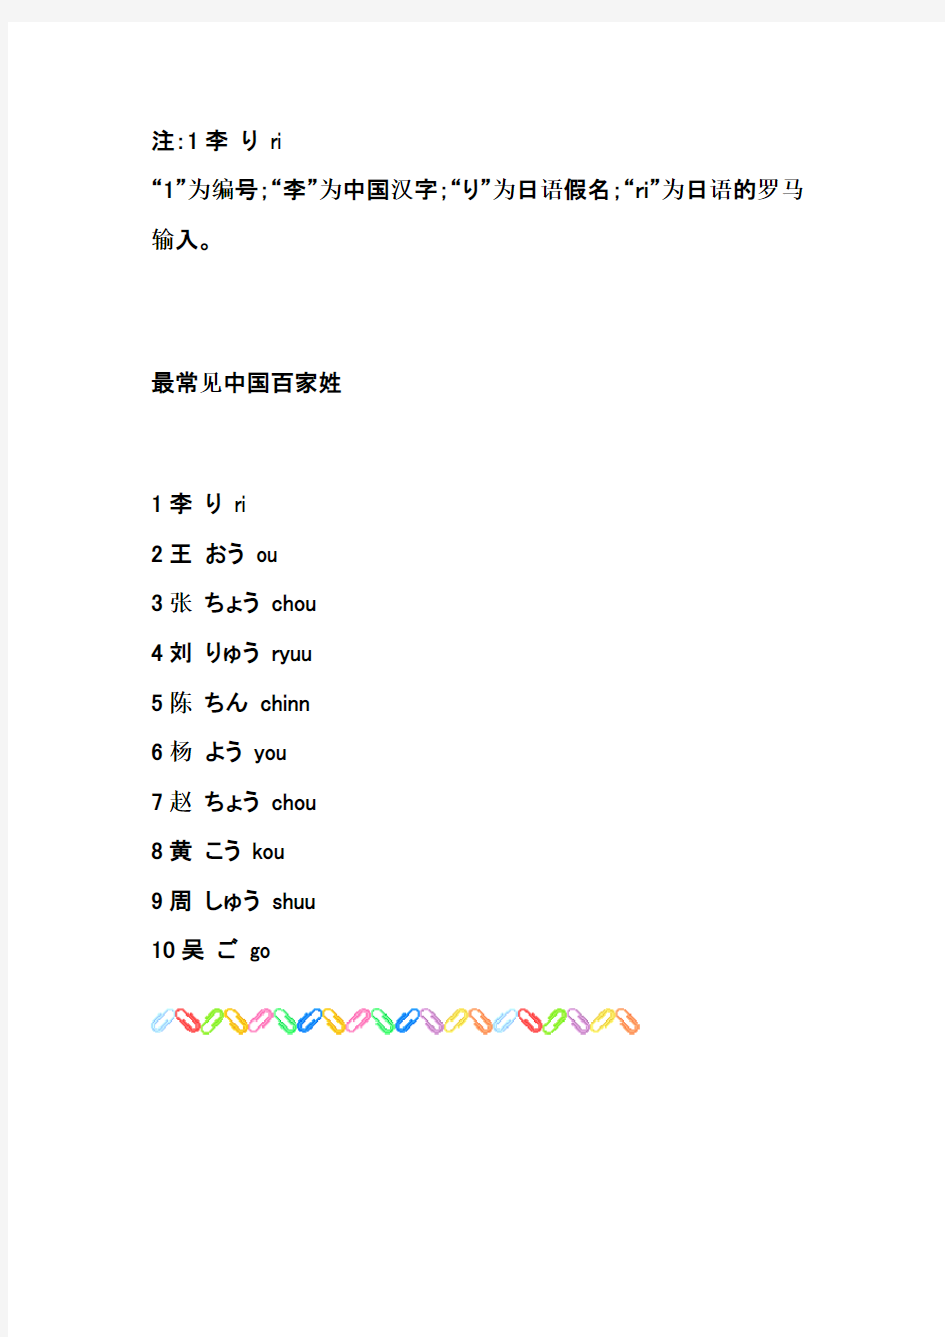 中国姓氏日语读法辞典(常见姓氏100)